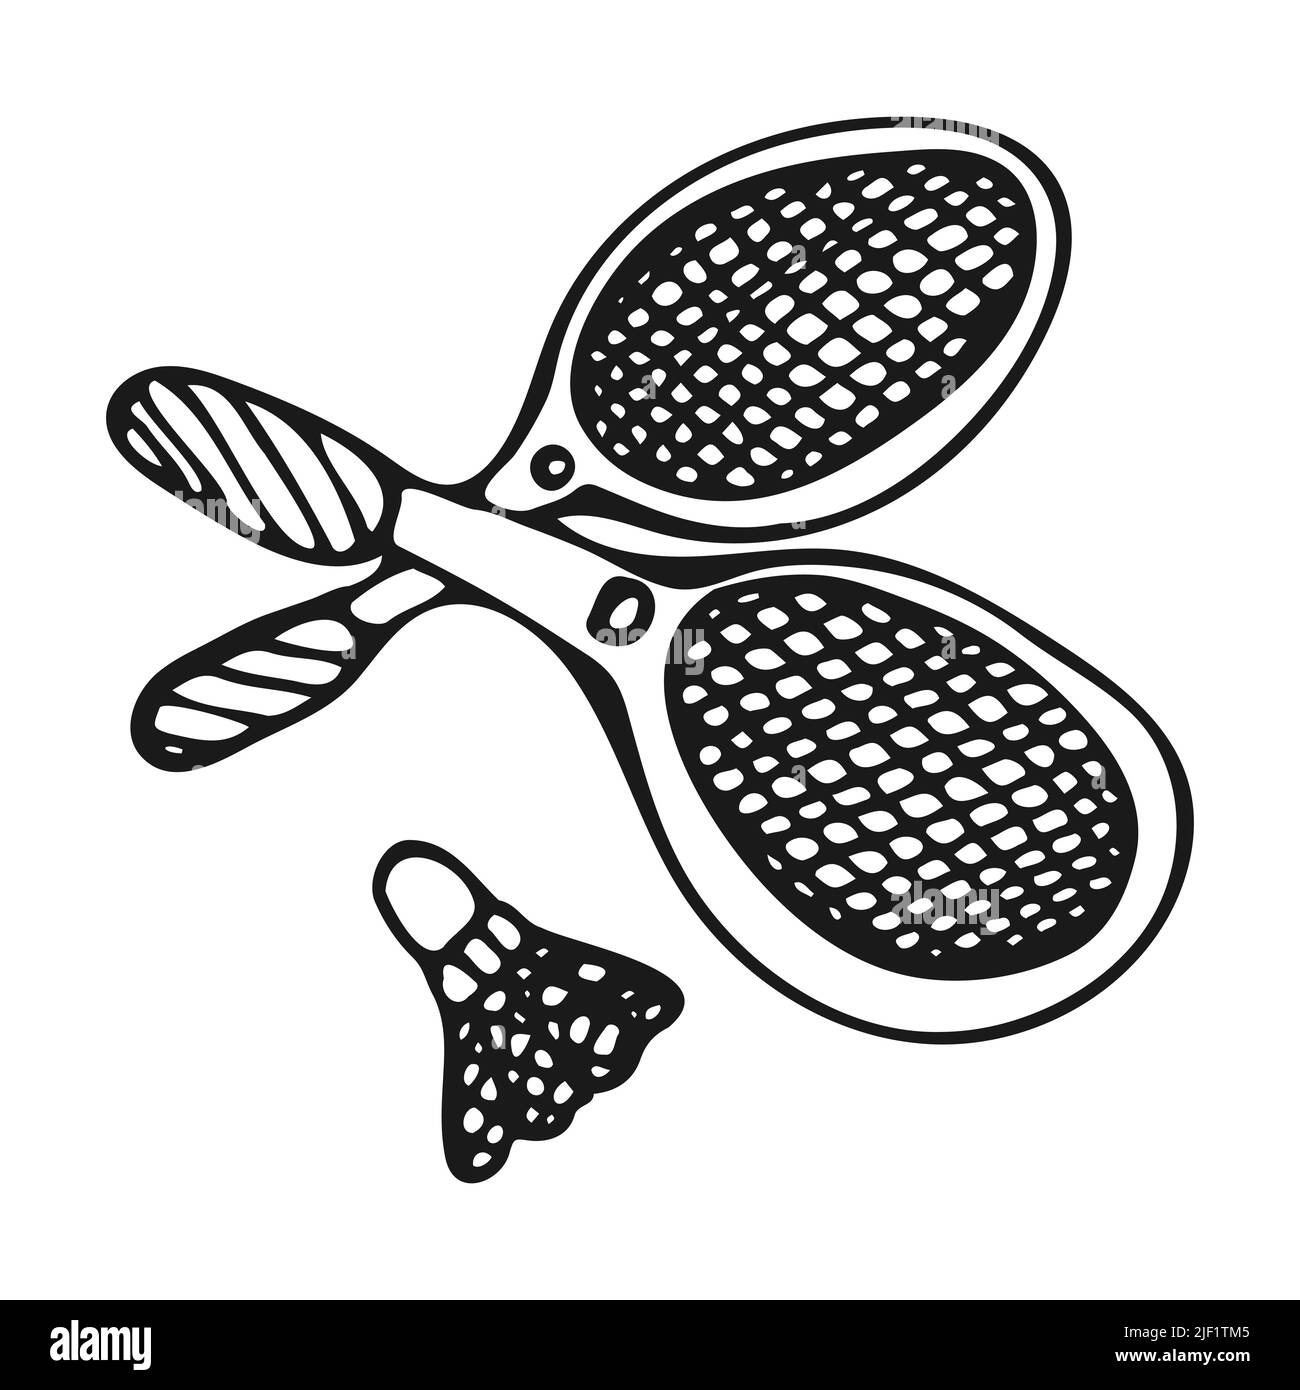 Deux raquettes et un shuttlecock pour jouer au badminton dans le style des gribouillages. Les raquettes de tennis sont dessinées à la main sur un fond blanc. Noir et blanc Illustration de Vecteur